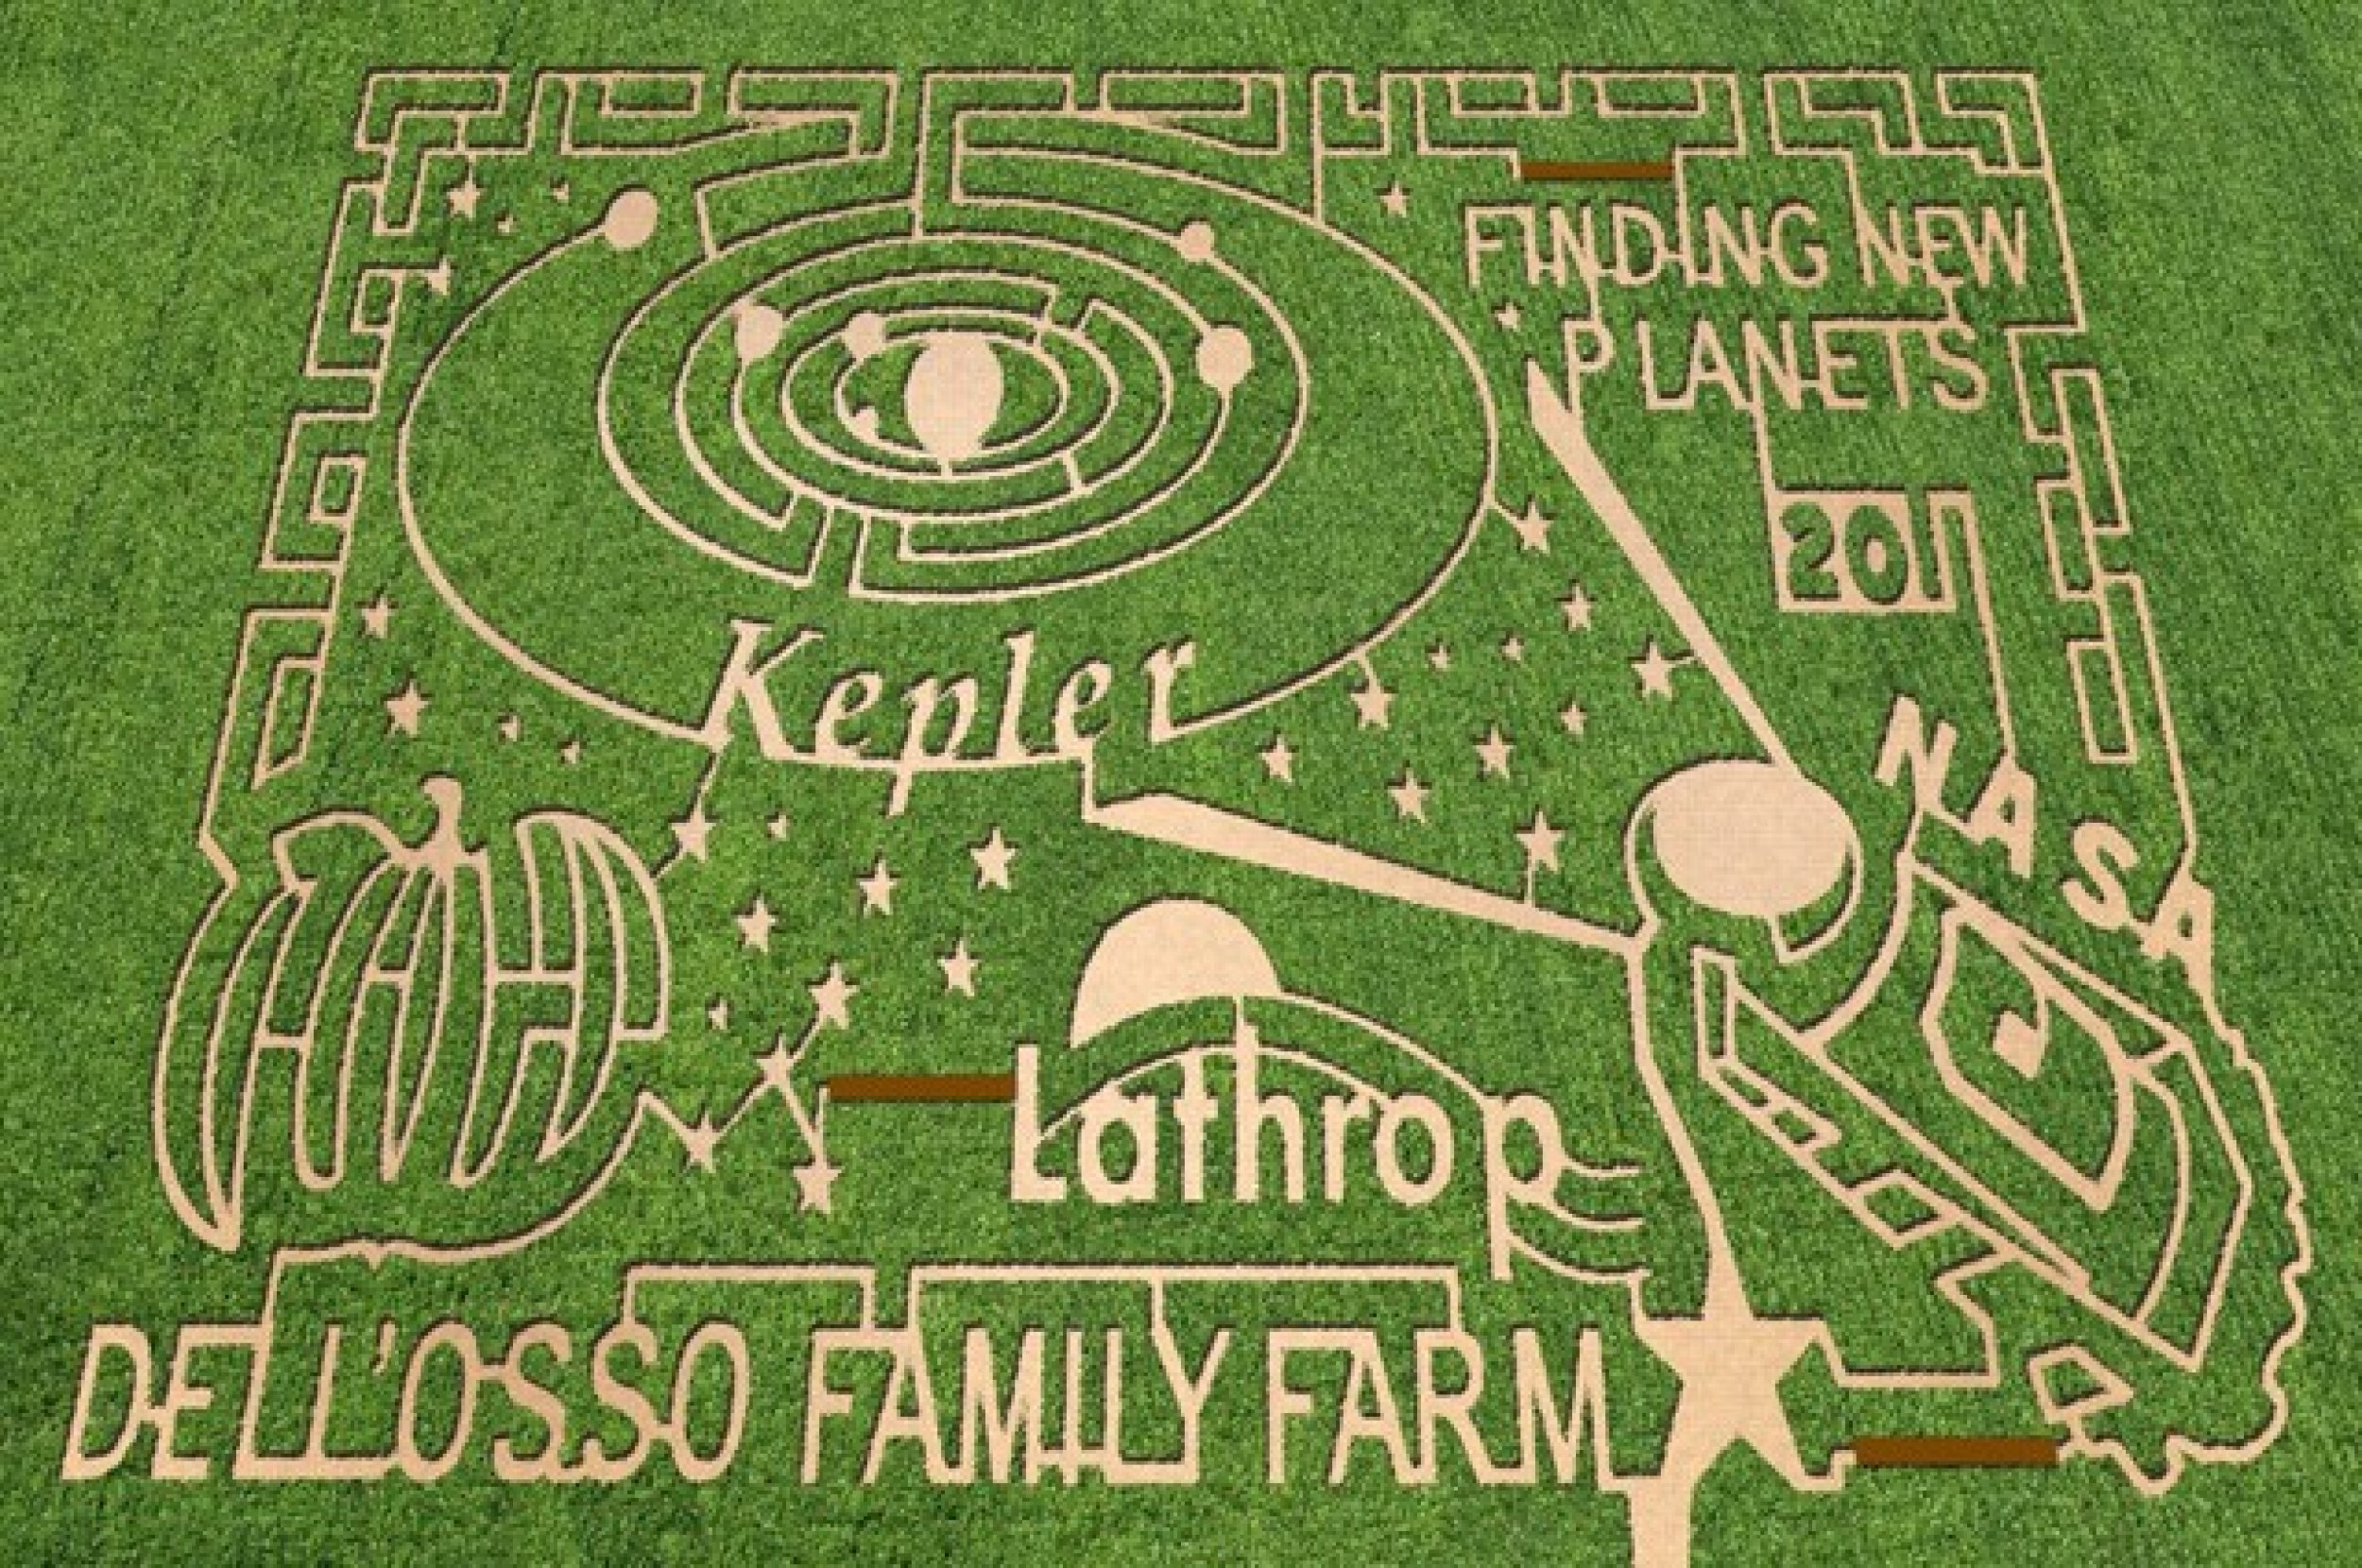 DellOsso Farms in Lathrop, California.